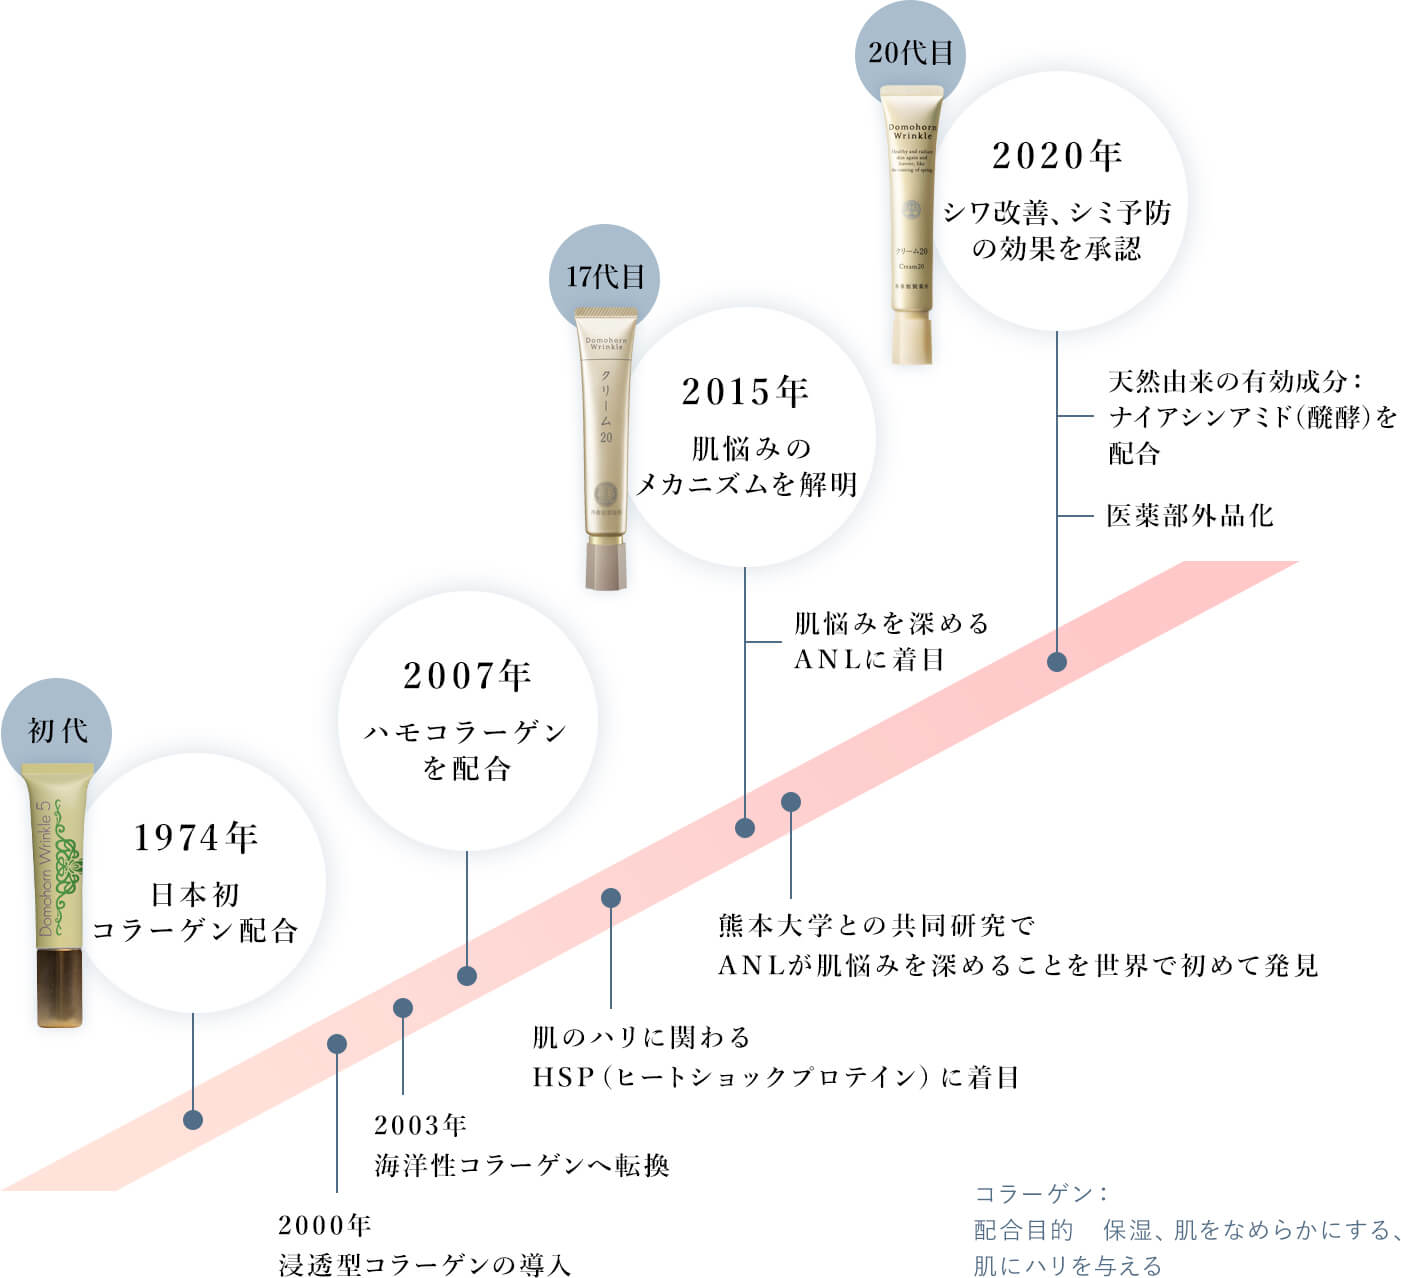 1974年日本初コラーゲン配合クリームが進化を続けて、2020年シワ改善、シミ予防の効果を承認